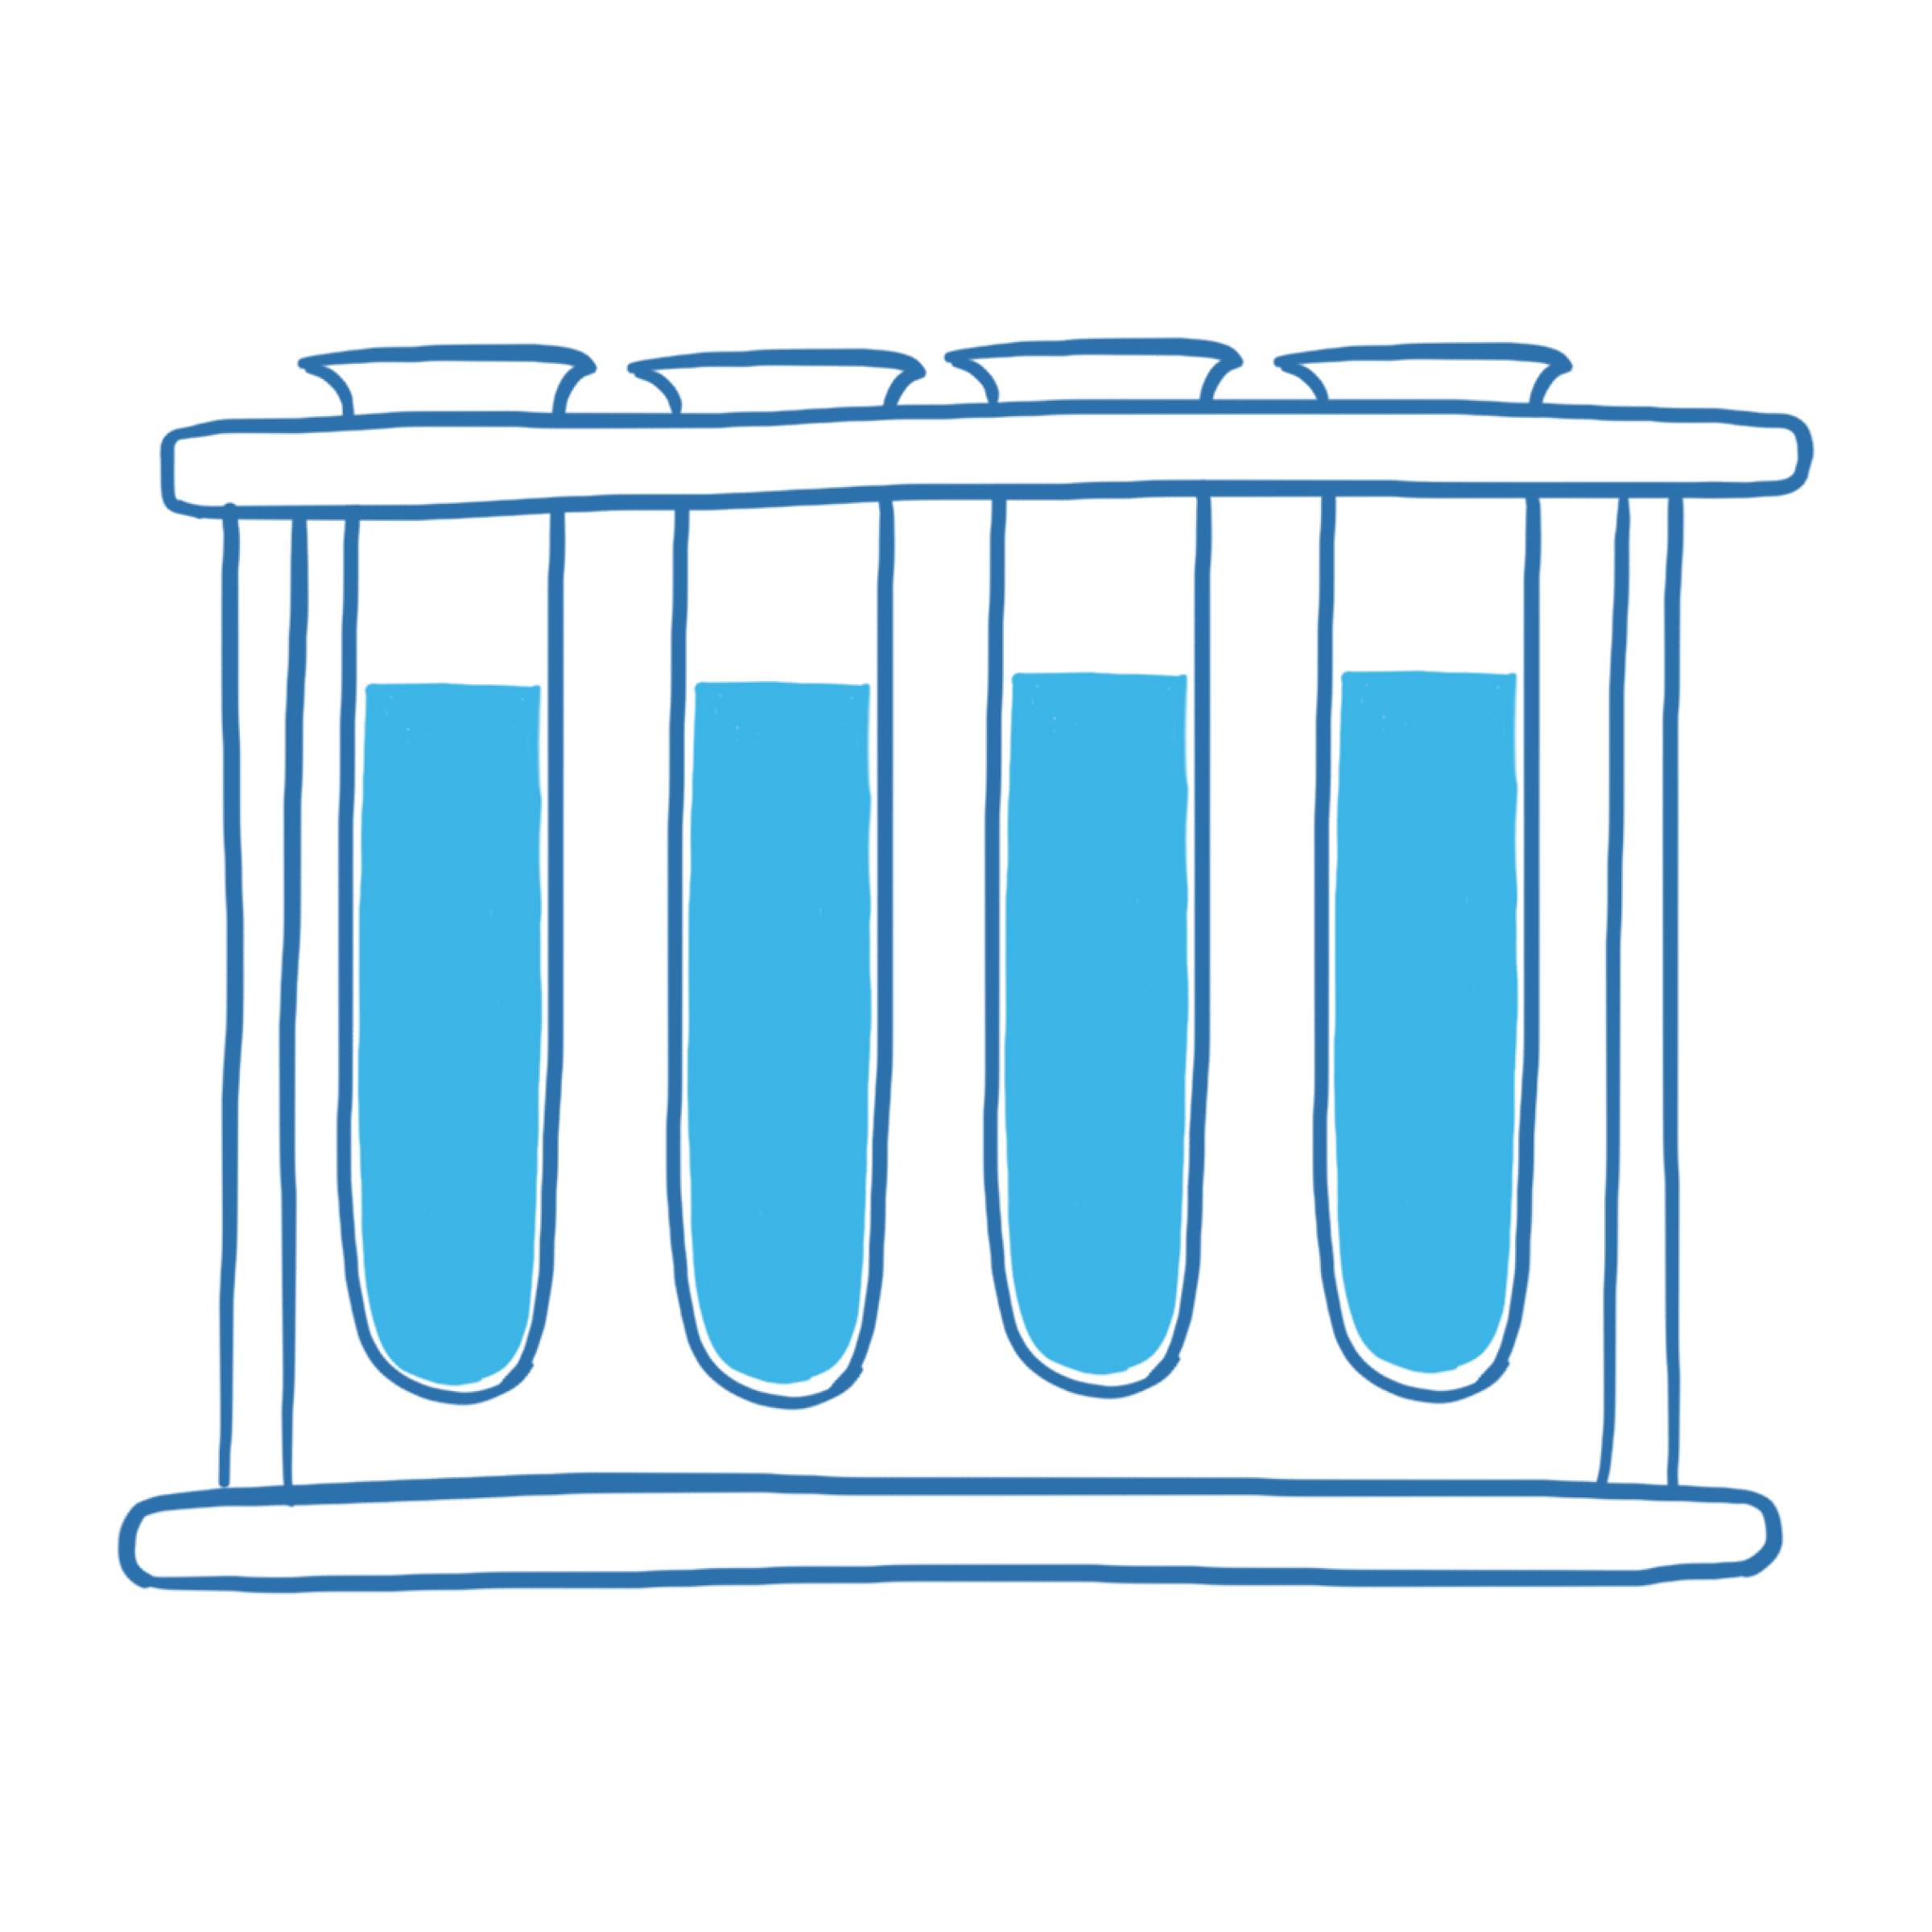 Vier illustrierte Reagenzgläser im Ständer mit einer blauen Flüssigkeit